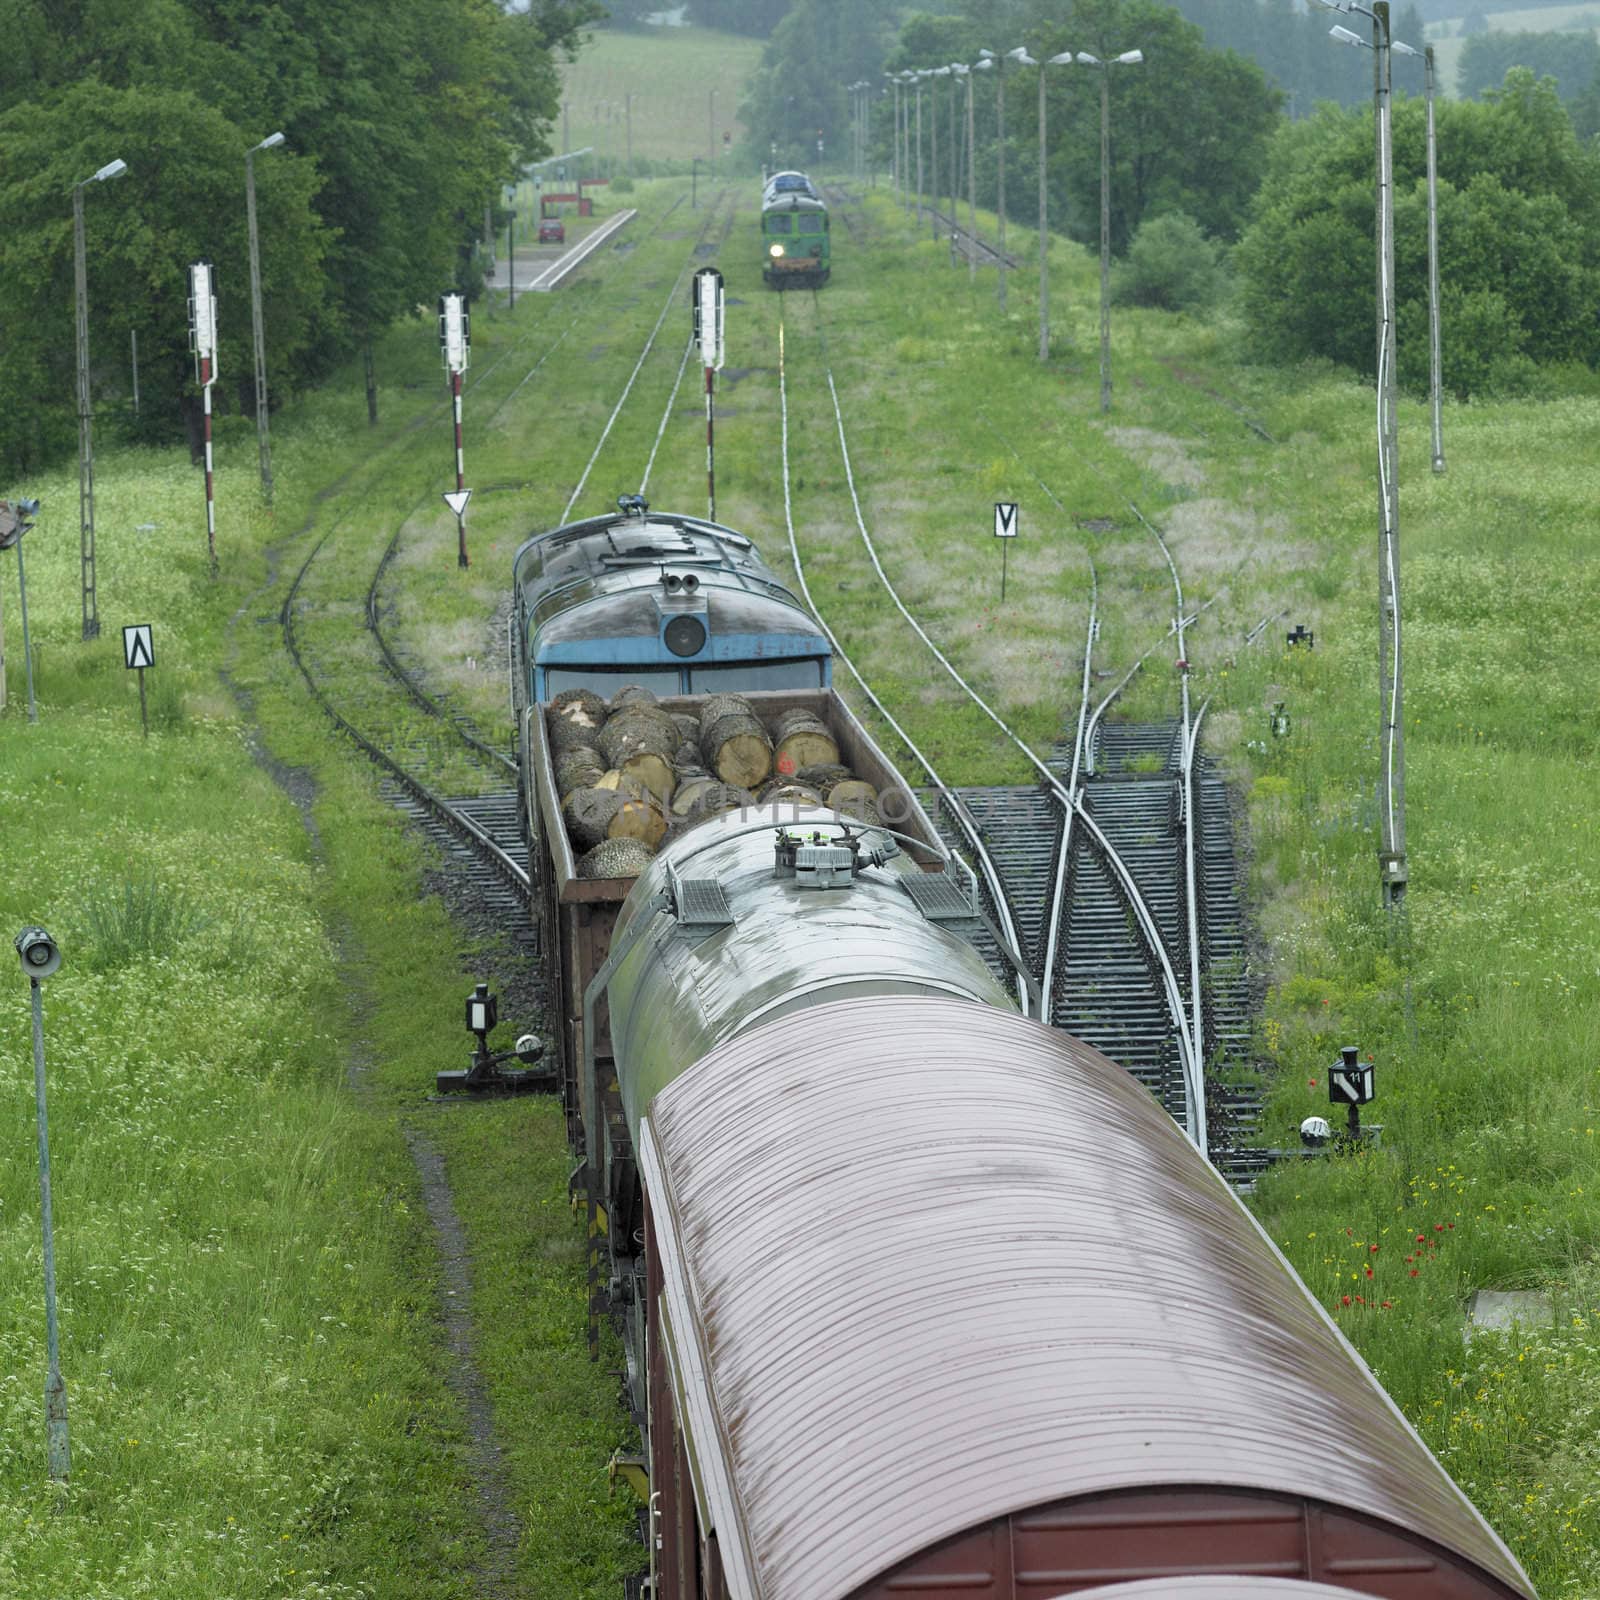 trains, Nowy Lupkow, Poland by phbcz